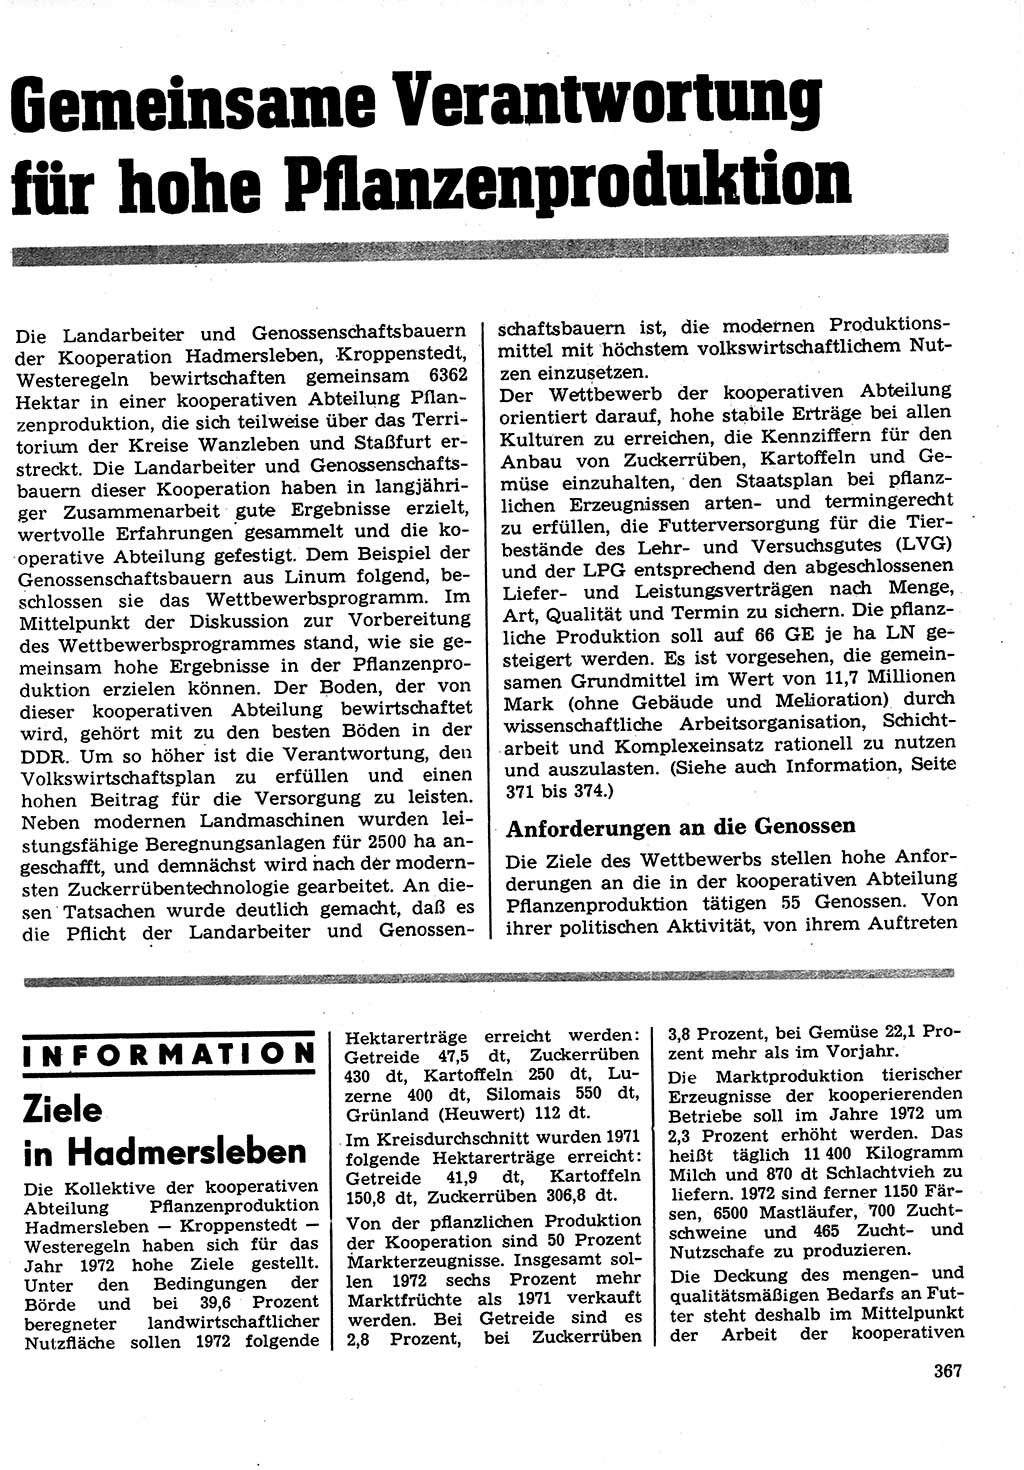 Neuer Weg (NW), Organ des Zentralkomitees (ZK) der SED (Sozialistische Einheitspartei Deutschlands) für Fragen des Parteilebens, 27. Jahrgang [Deutsche Demokratische Republik (DDR)] 1972, Seite 367 (NW ZK SED DDR 1972, S. 367)